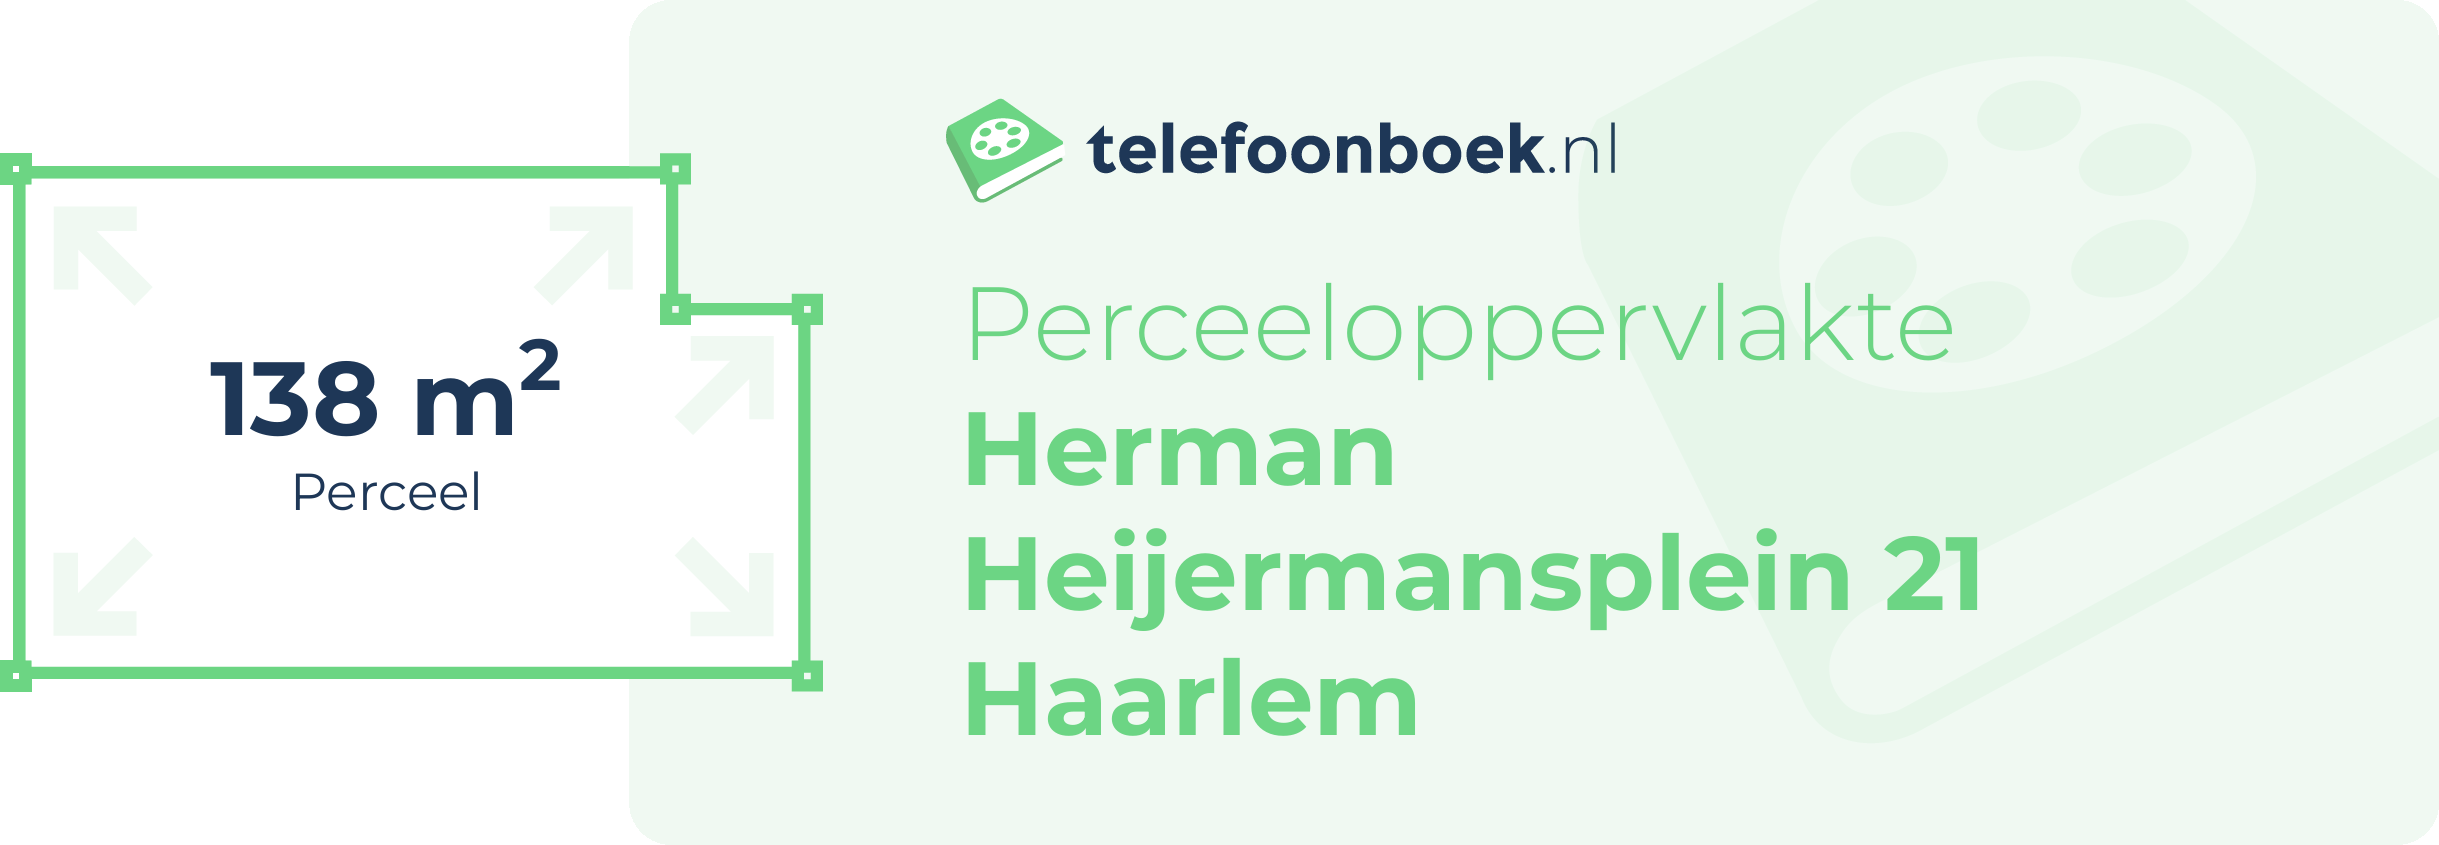 Perceeloppervlakte Herman Heijermansplein 21 Haarlem